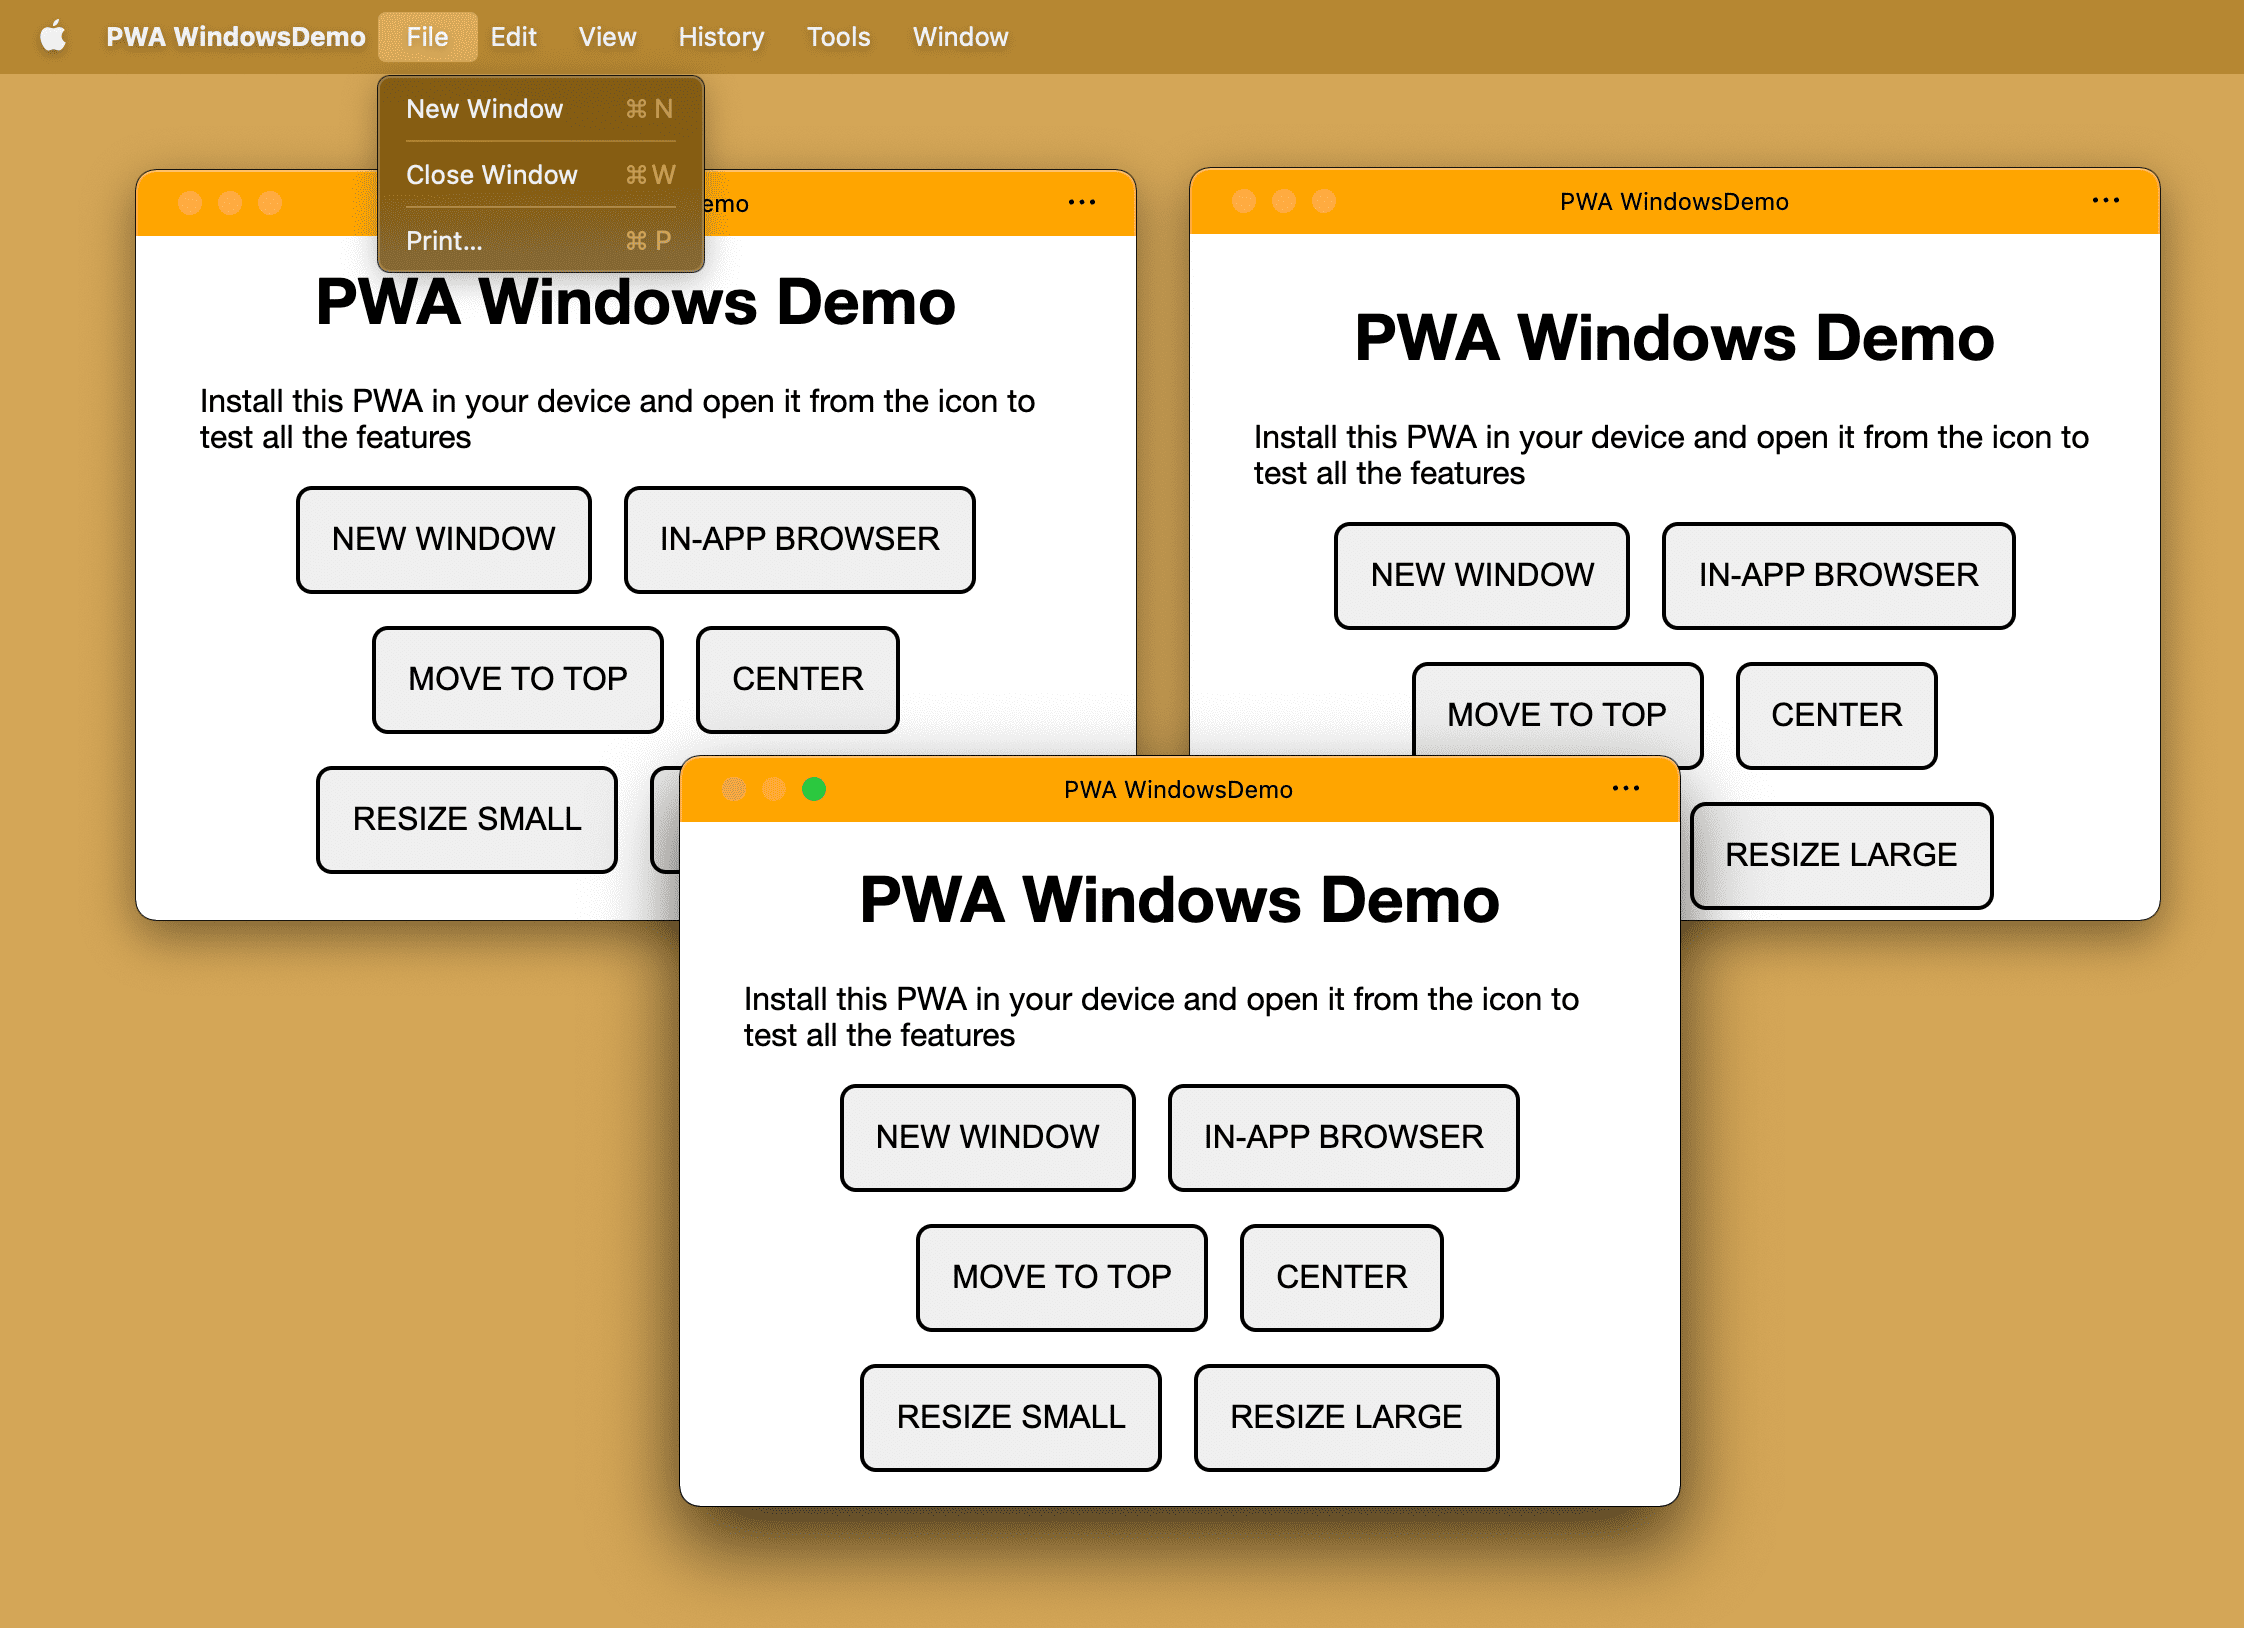 在桌面设备操作系统中打开多个窗口的相同安装版 PWA。